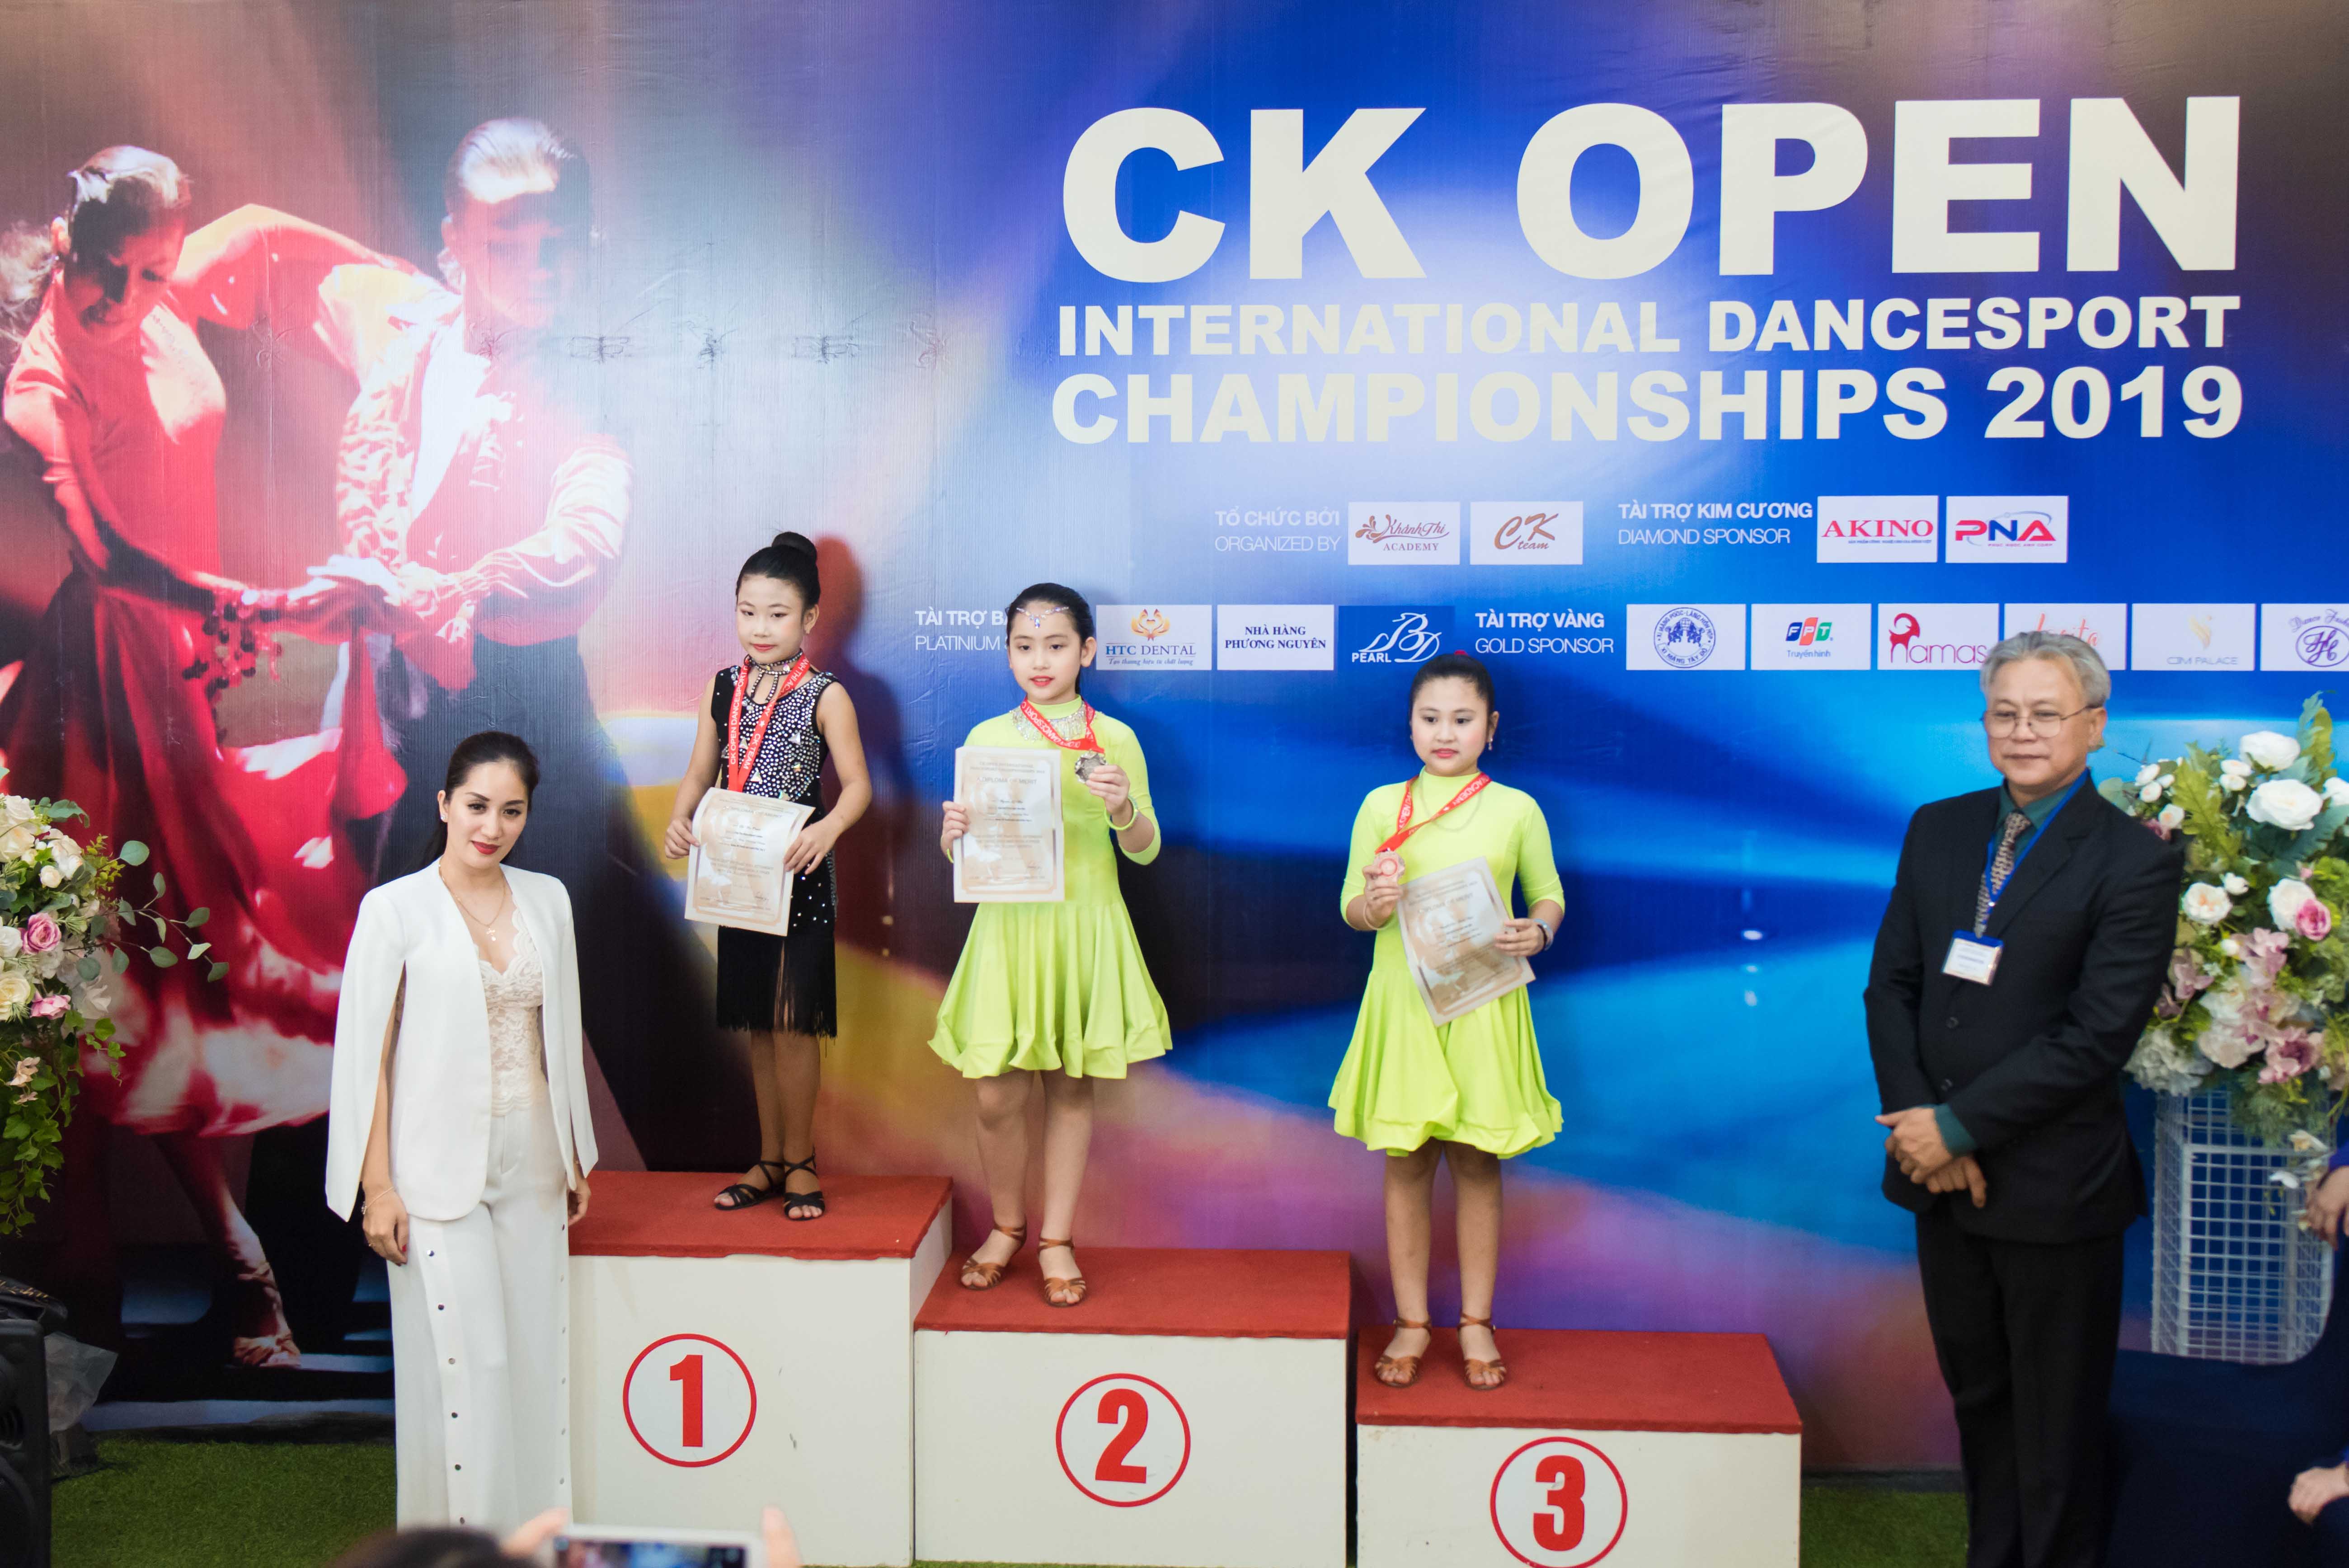  CK OPEN INTERNATIONAL DANCESPORT CHAMPIONSHIPS 2019